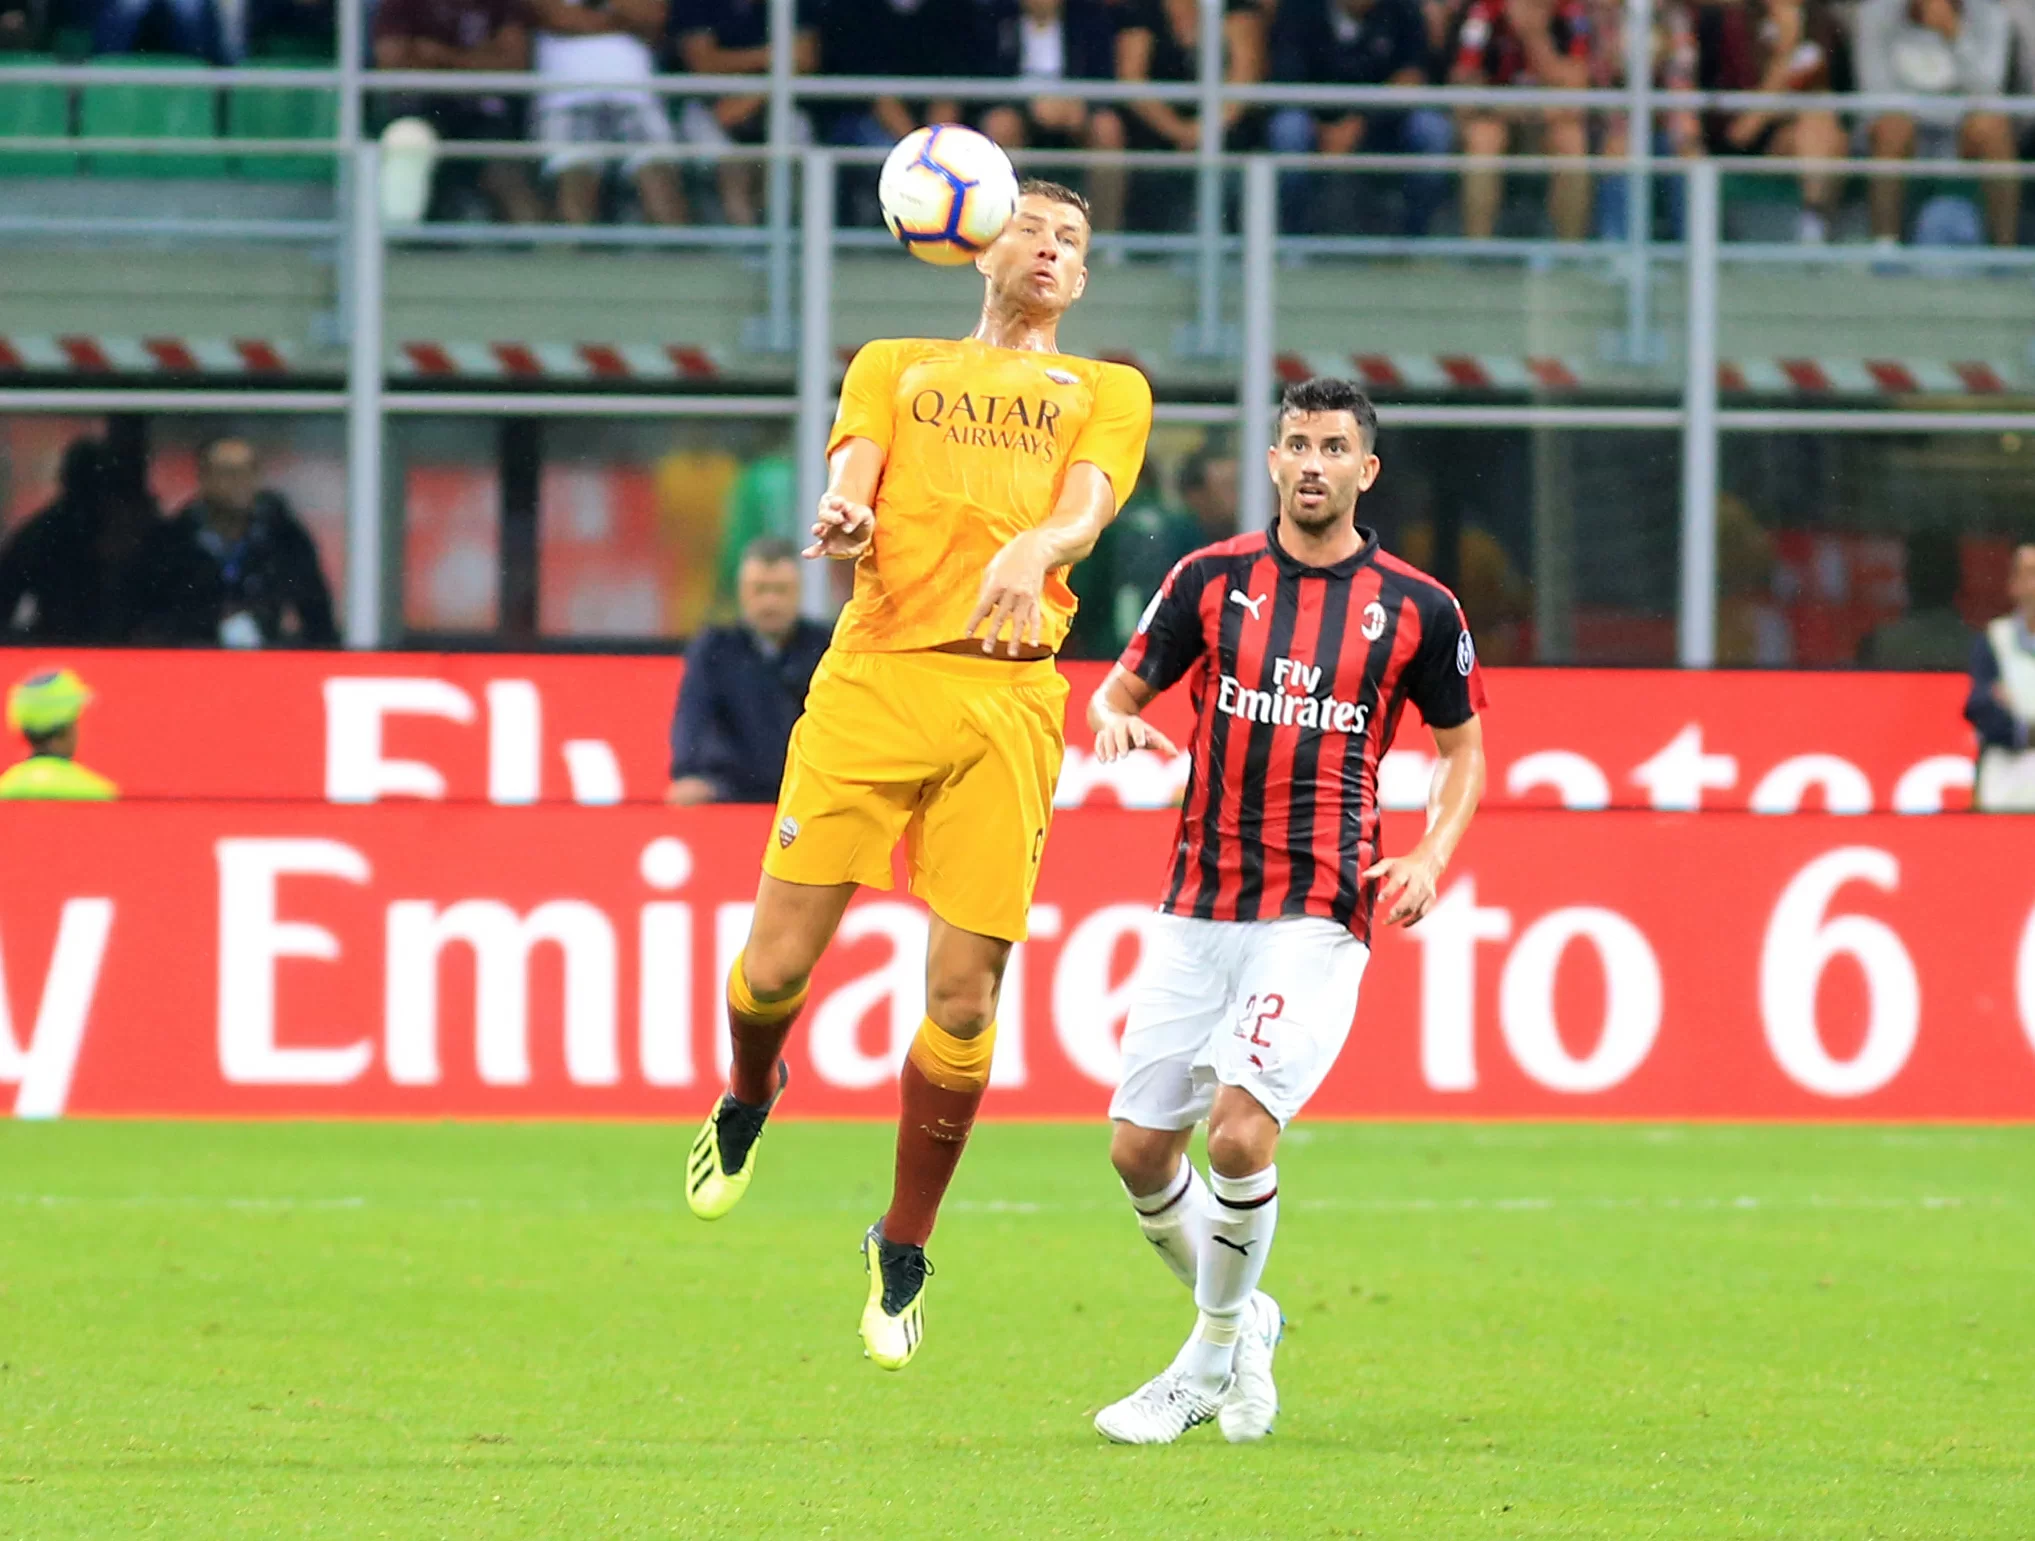 Roma-Milan, domani sarà la sfida numero 169: bilancio favorevole ai rossoneri